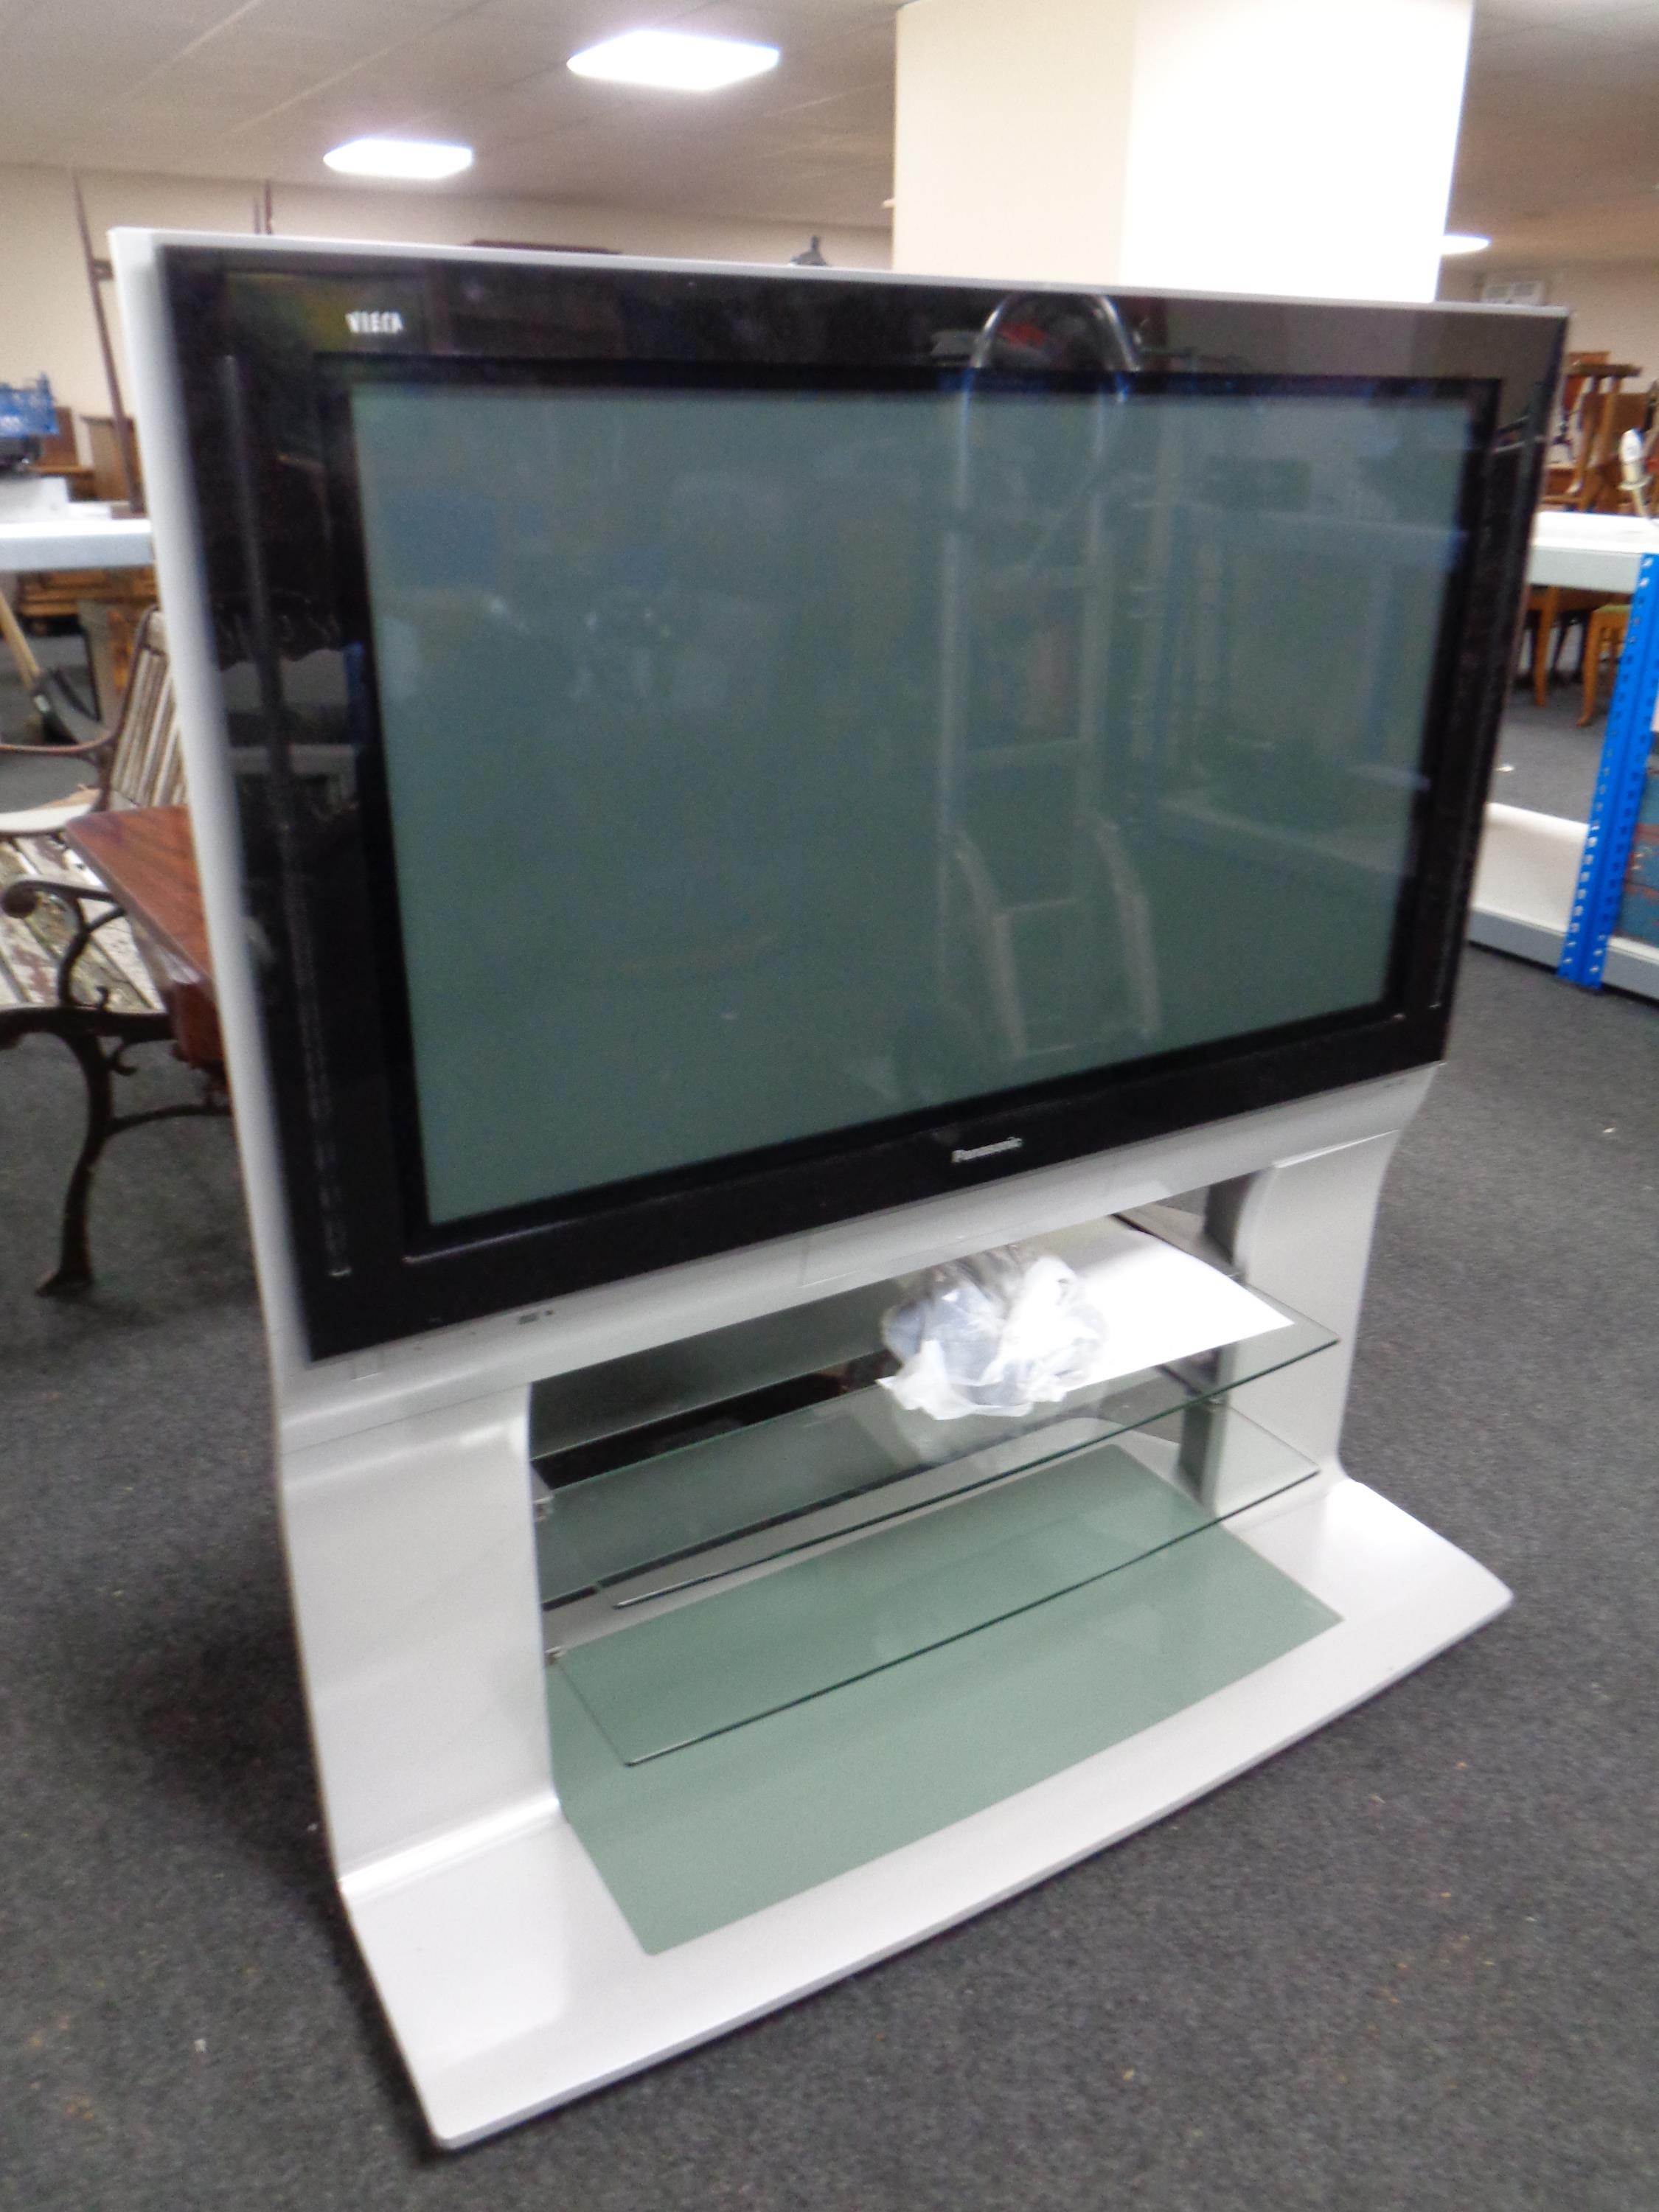 A Panasonic Viera 42'' Plasma TV on stand